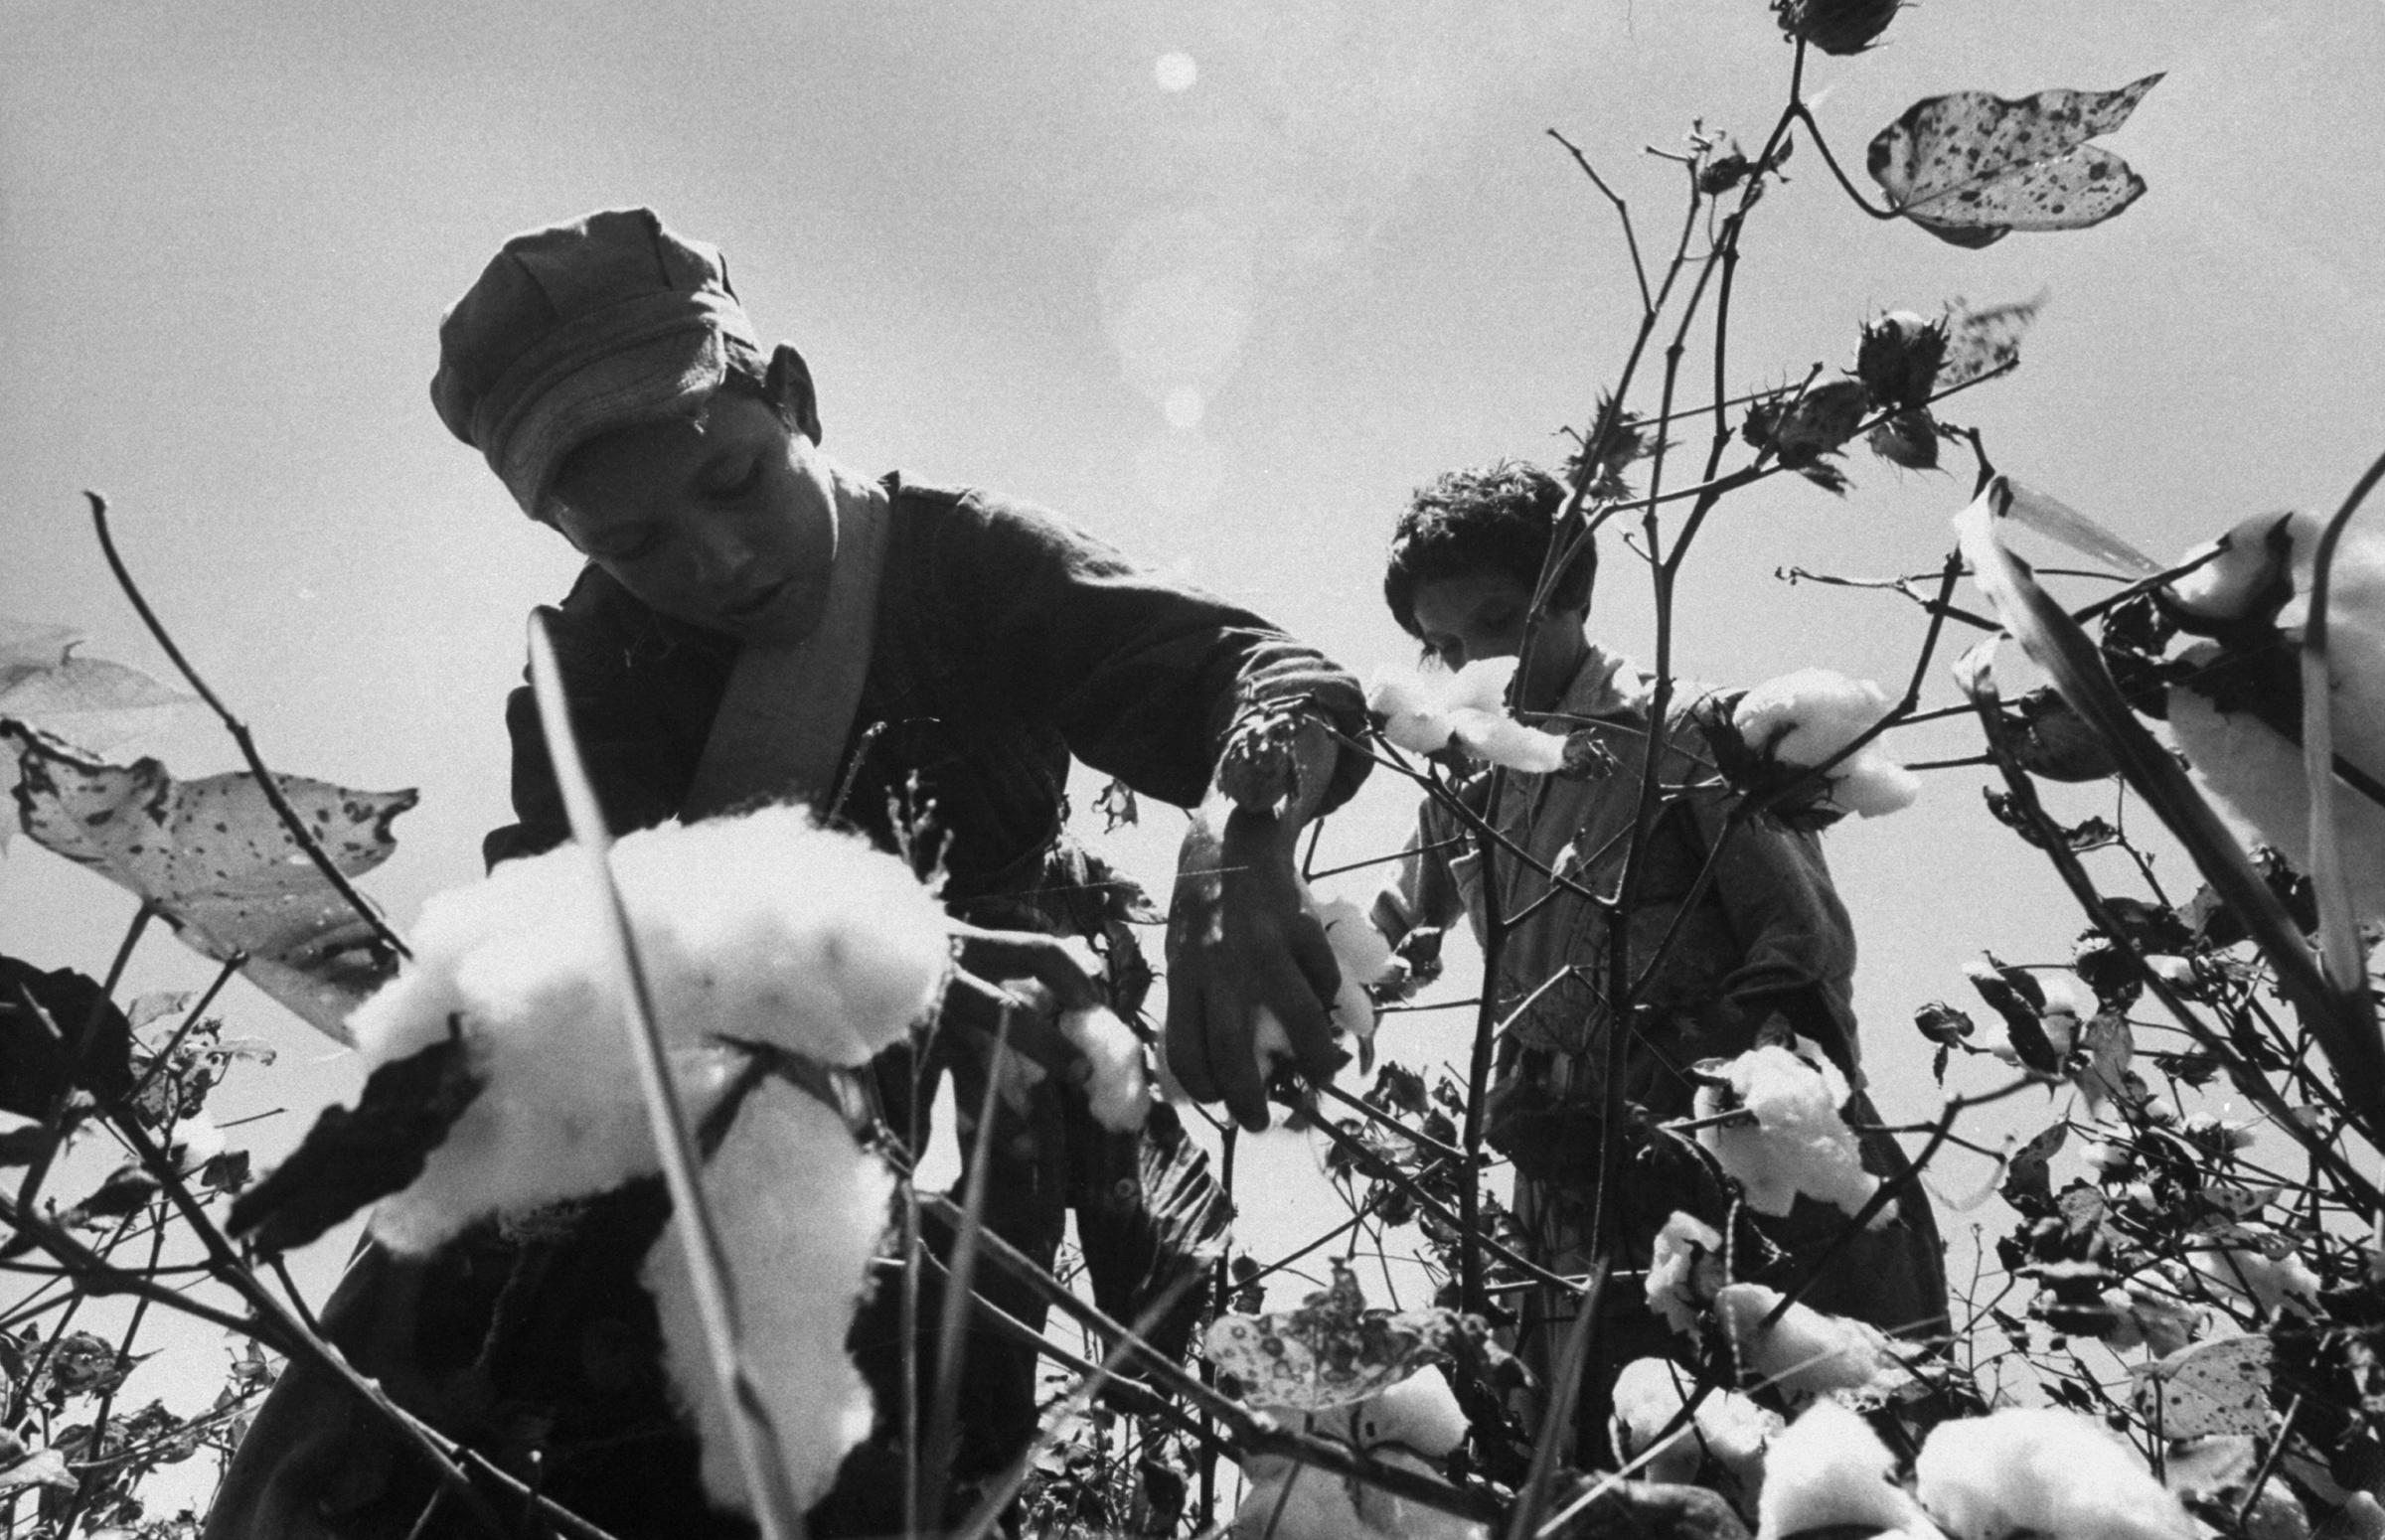 Child migrant farm laborer harvesting cotton, Rio Grande Valley, Texas, 1959.